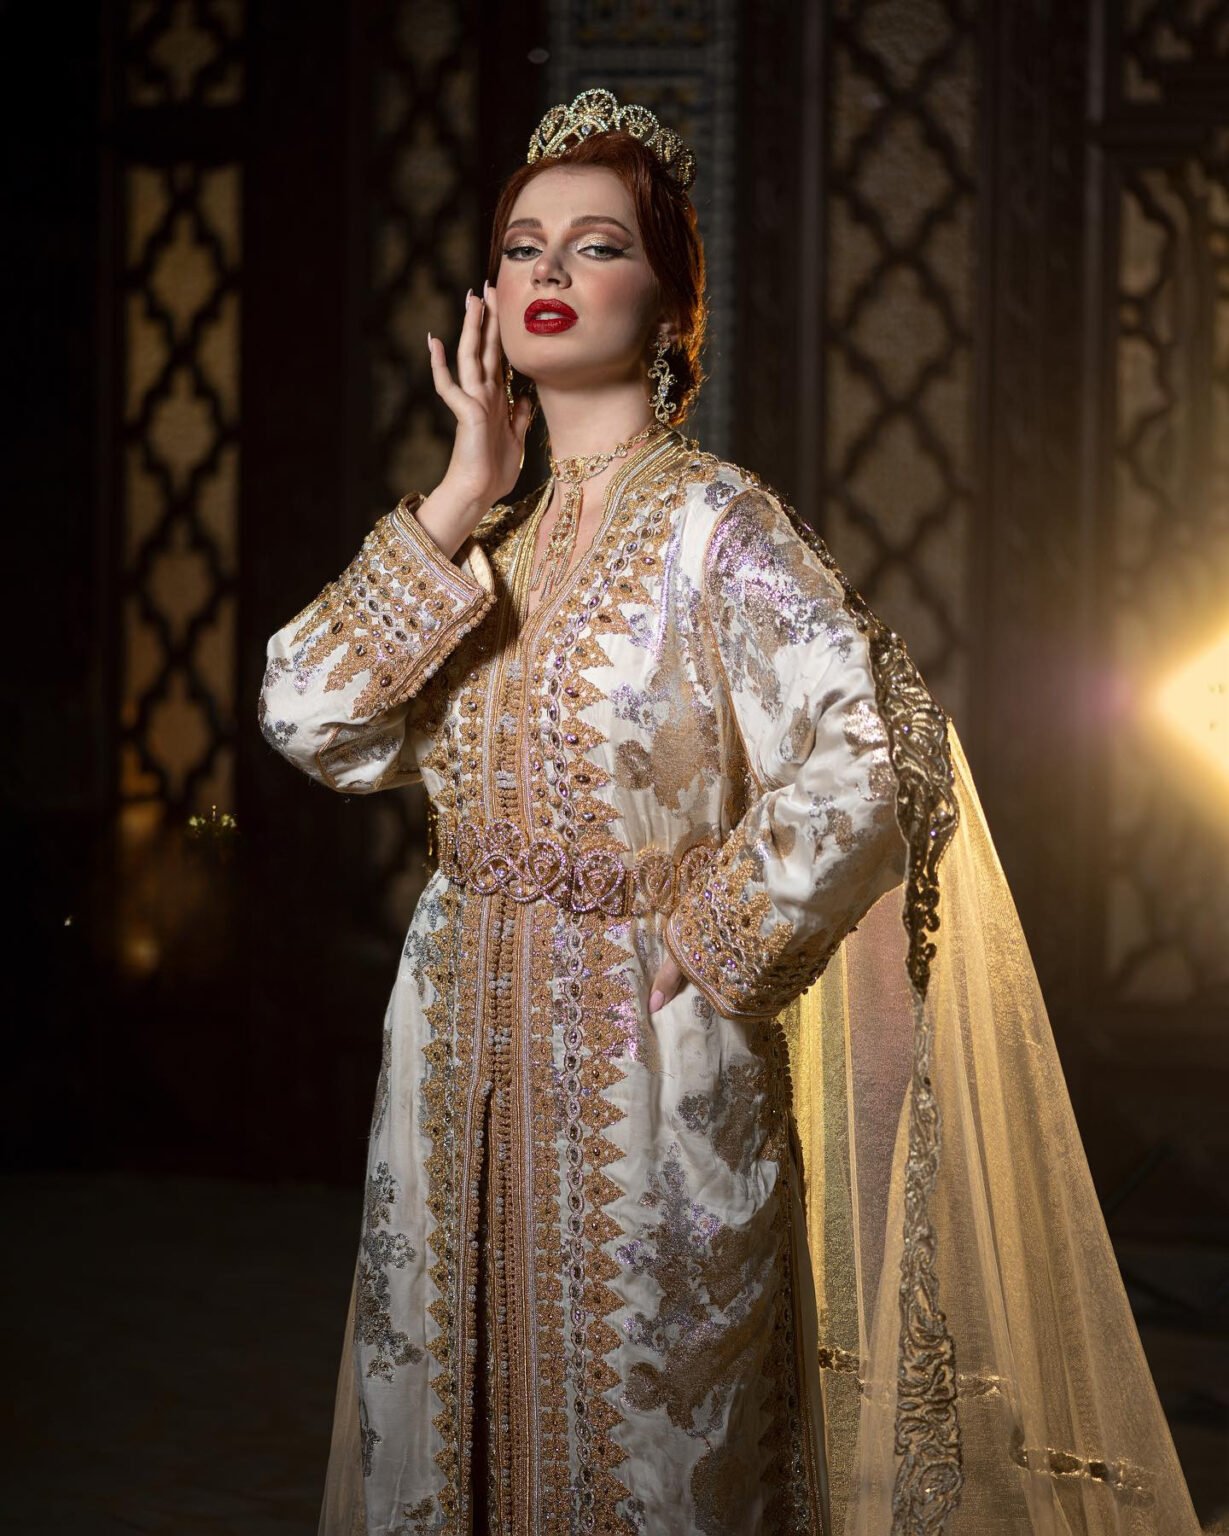 Une Histoire en Soie et en Perles : Nos caftans marocains sont confectionnés avec soin à partir de tissus luxueux, ornés de perles scintillantes et de broderies délicates. Chaque caftan raconte une histoire d'amour et de tradition